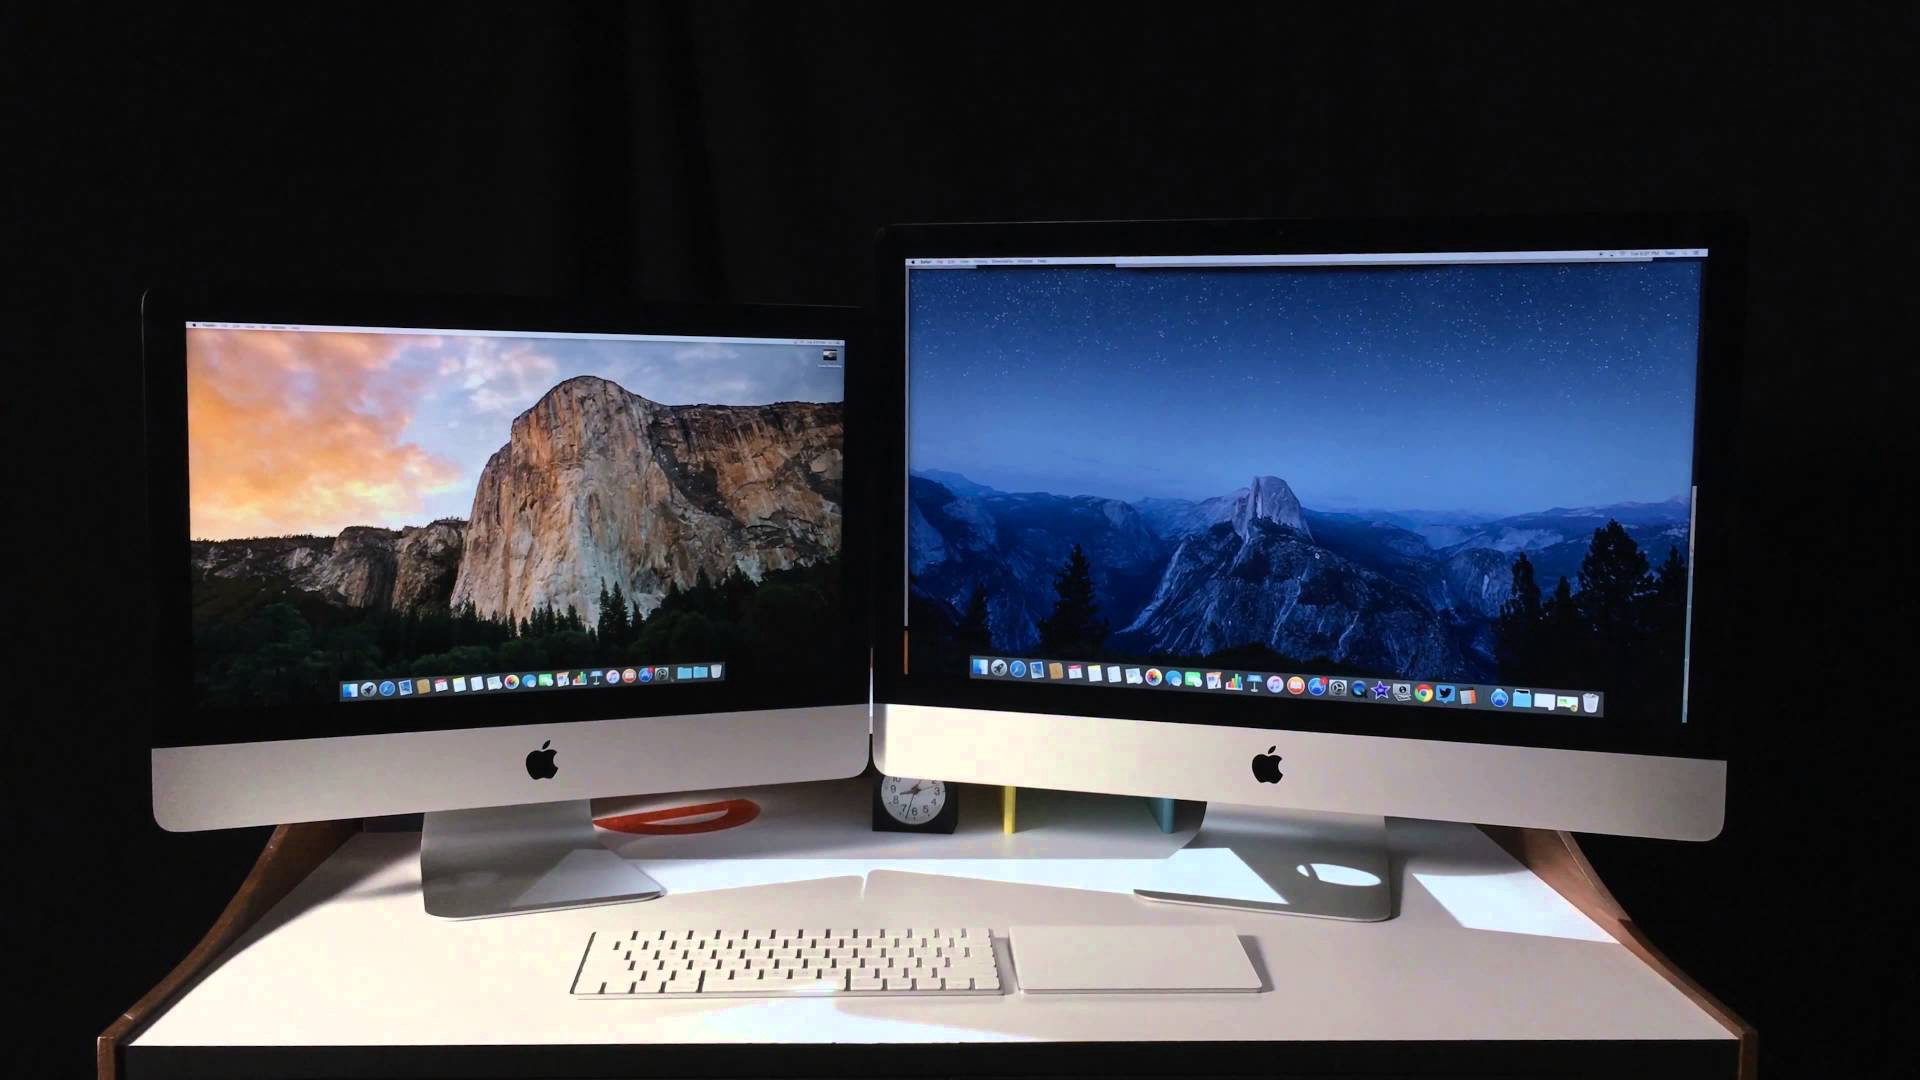 صورة أجهزة Apple iMac قد تأتي بشاشة أكبر من ذي قبل مع معالجاتها الخاصة!